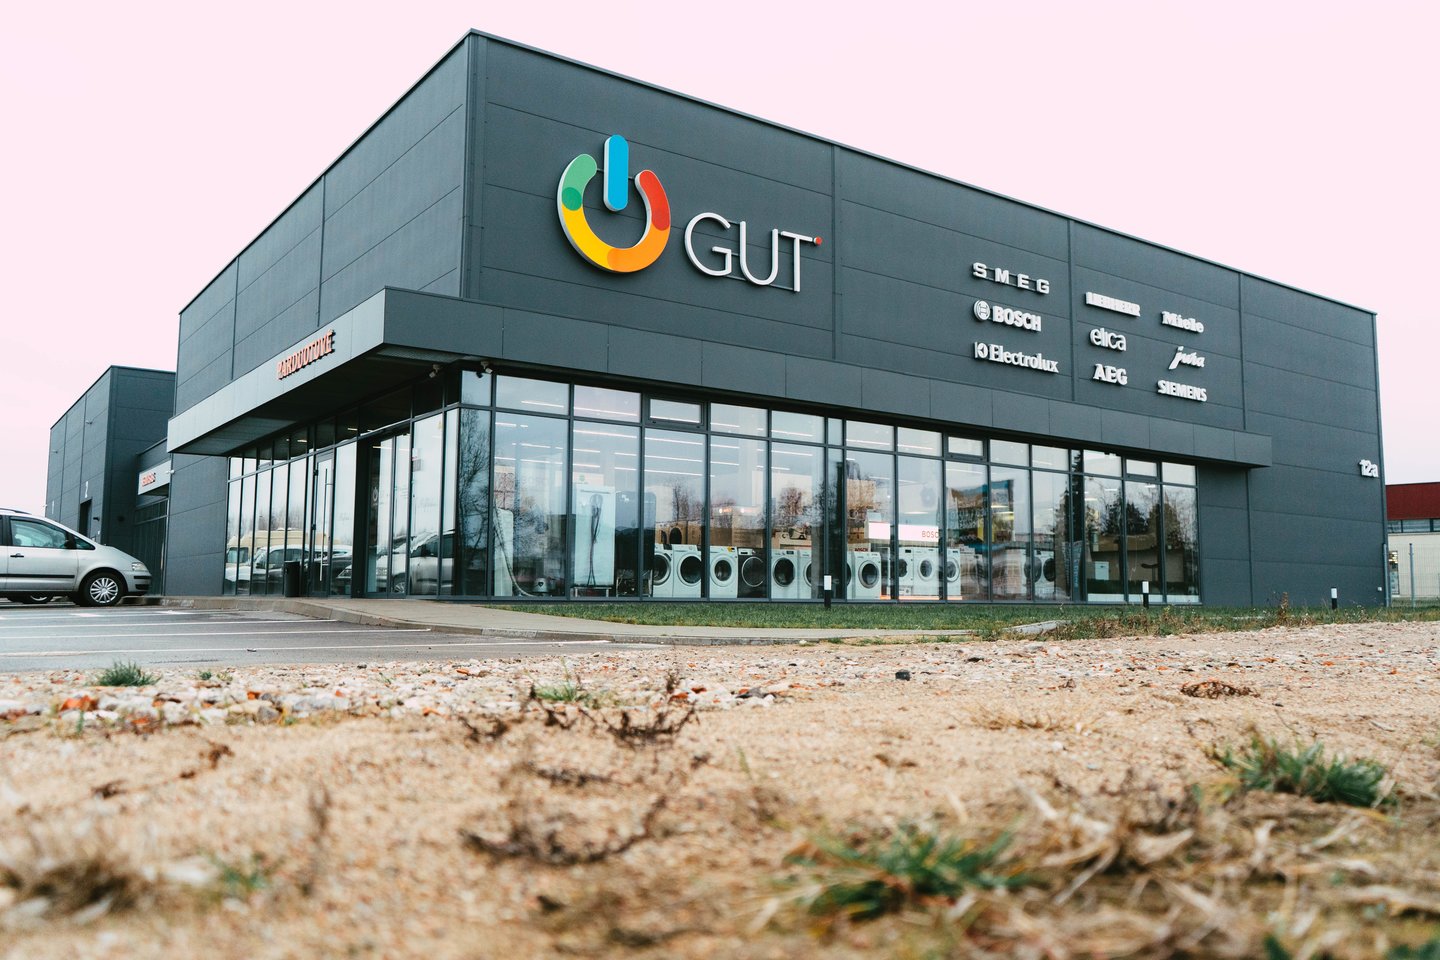  Jau kelis dešimtmečius veikianti įmonė „Vektrona“ neseniai Alytuje atvėrė fizinės parduotuvės „GUT“, prekiaujančios buitine technika, duris.